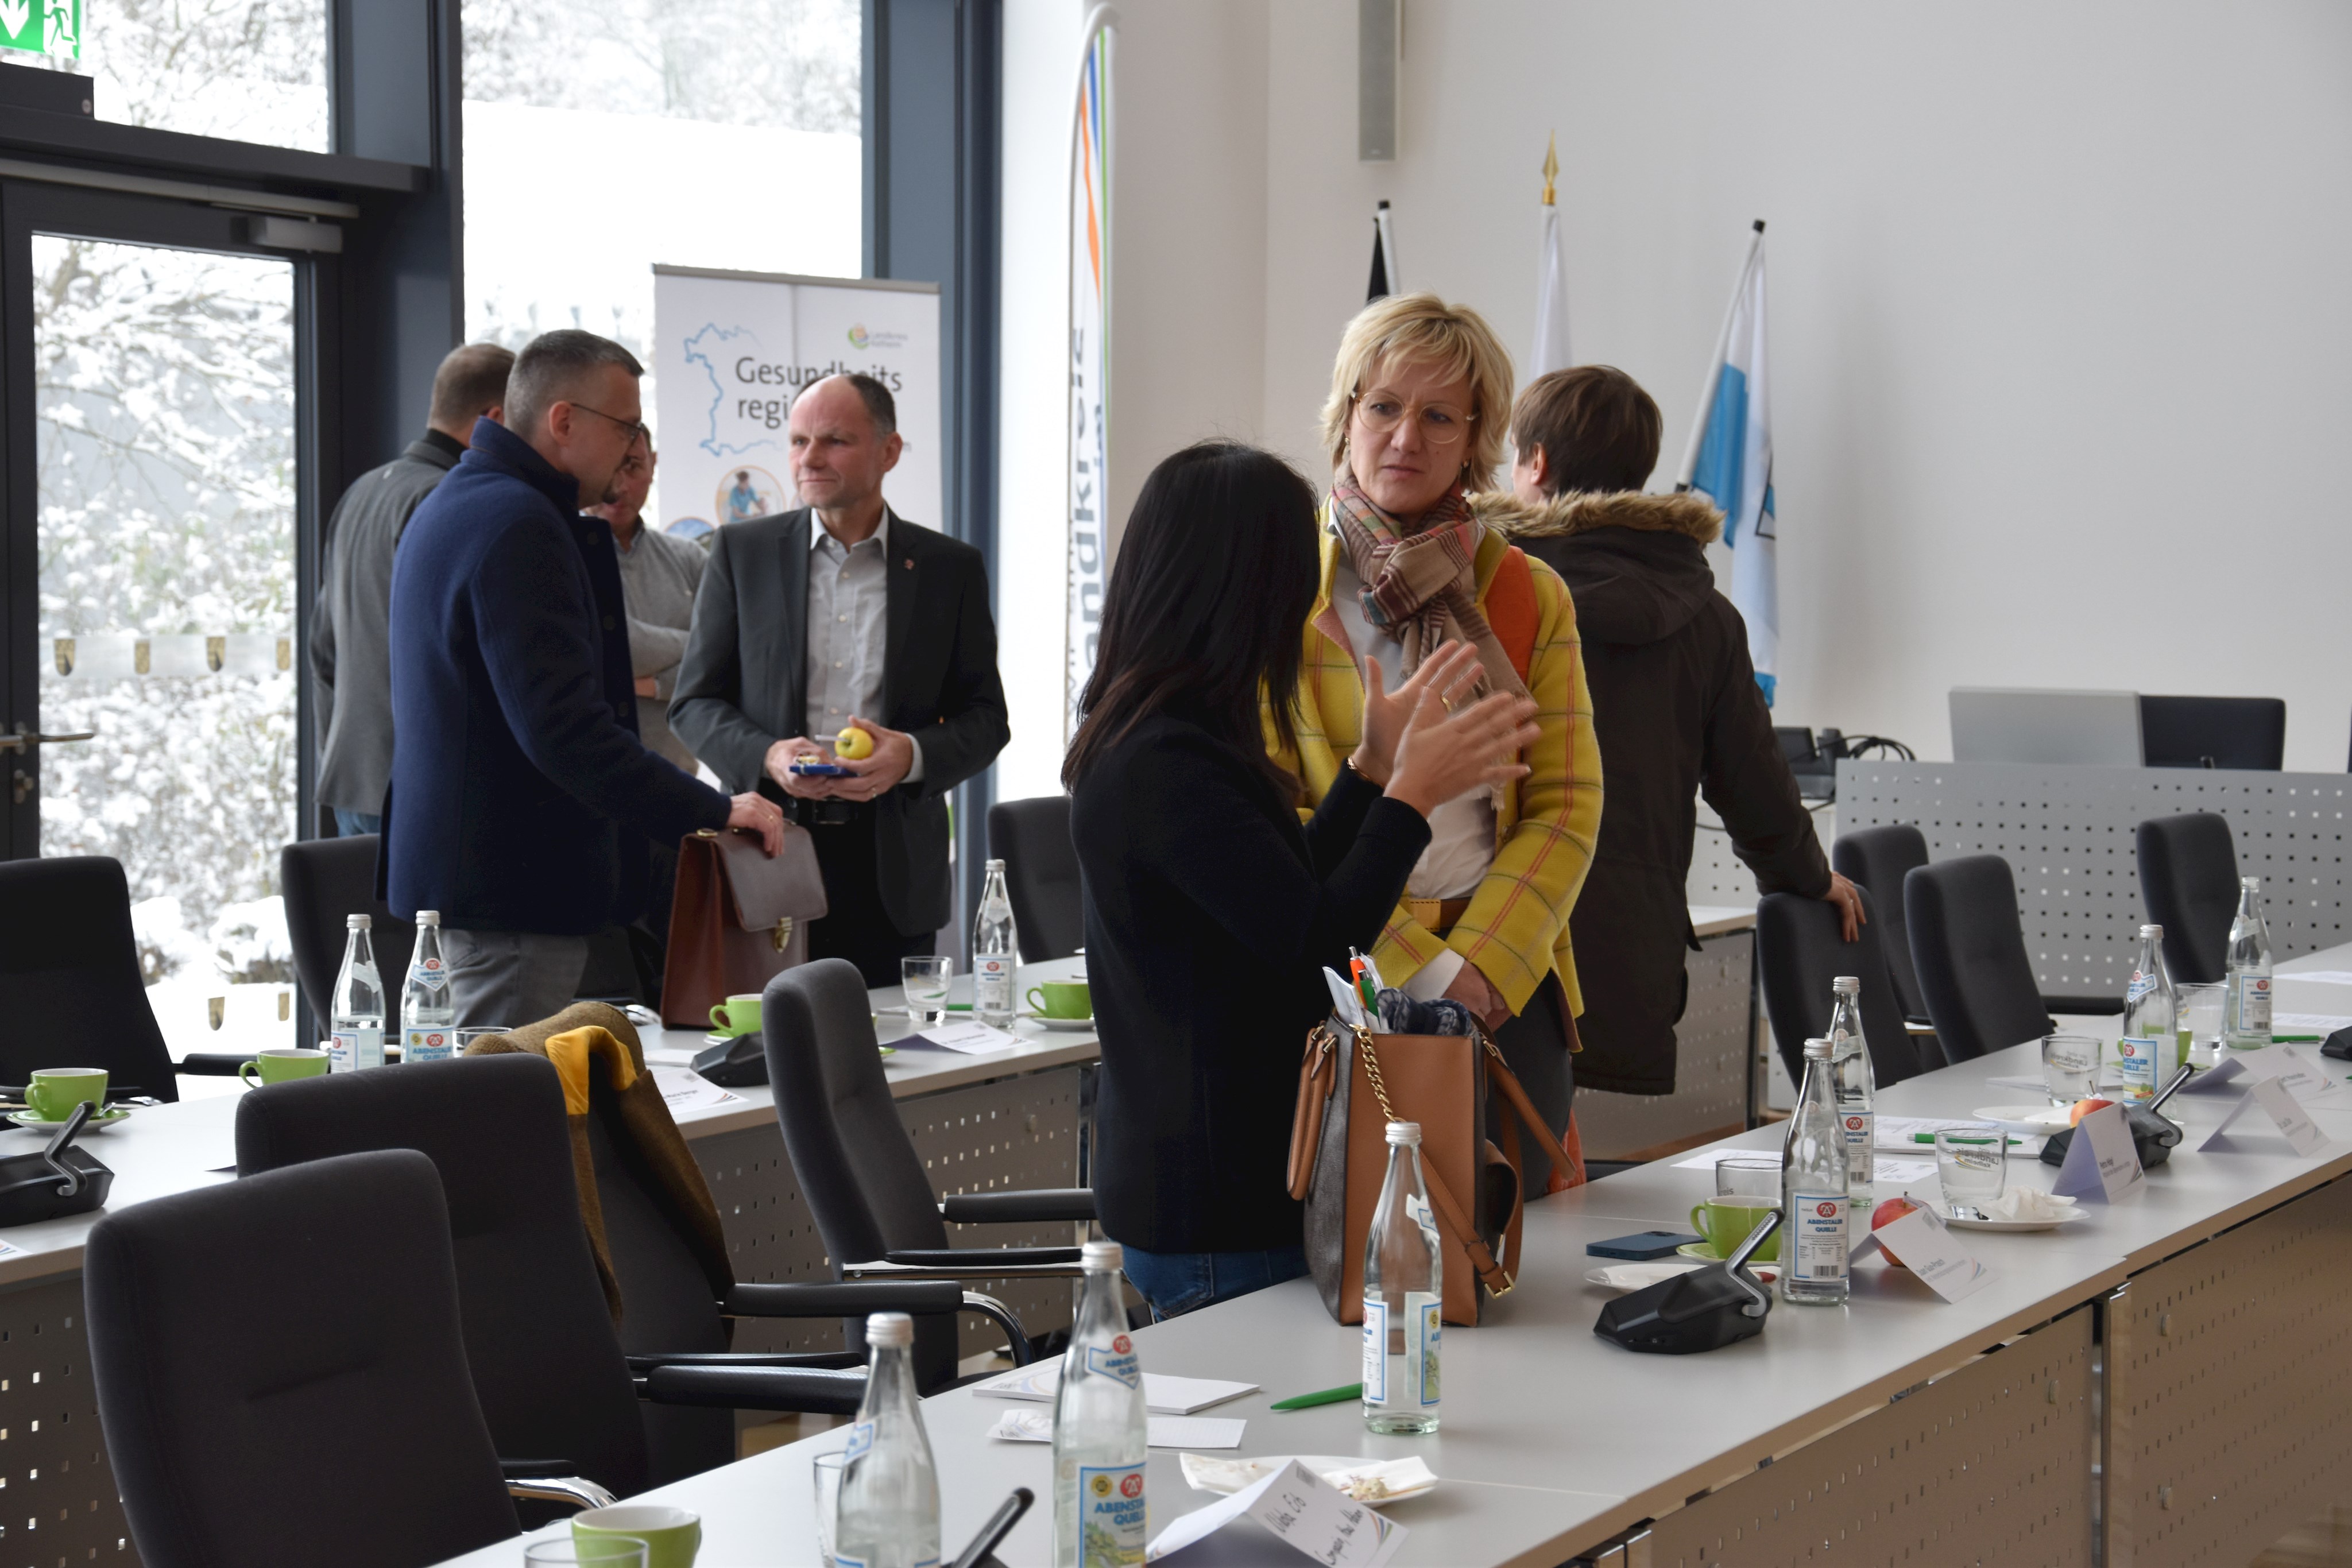 Die Akteurinnen und Akteure hatten die Gelegenheit mit Vertreterinnen und Vertretern aus der Politik, wie hier mit der Landtagsabgeordneten Petra Högl, ins Gespräch zu kommen.